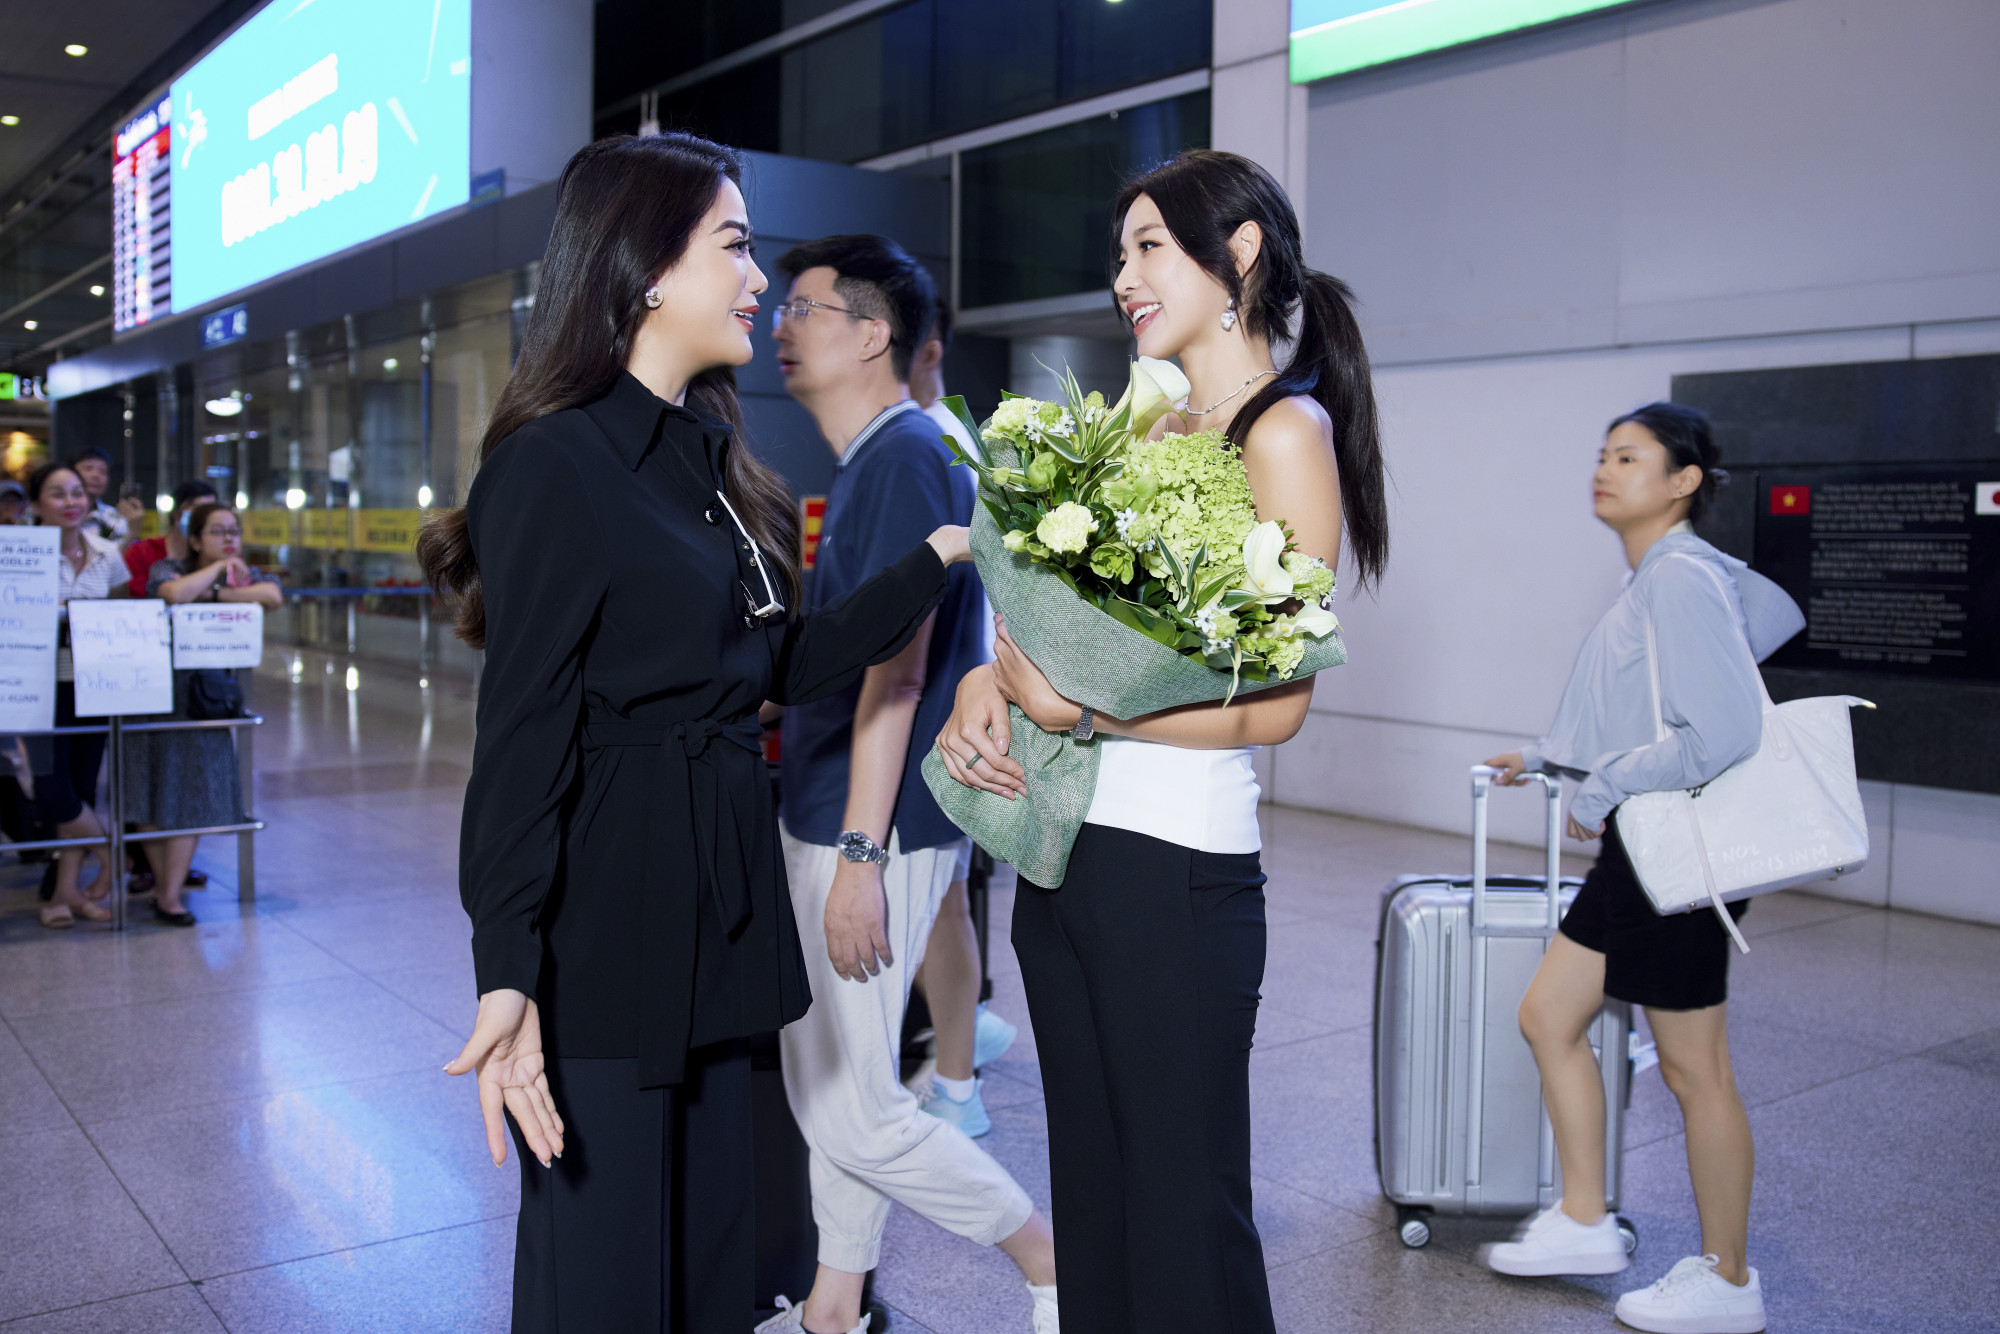 Xuất hiện tại sân bay Tân Sơn Nhất, Hoa hậu Miss Earth 2022 - Mina Sue Choi đã ghi điểm bởi phong cách giản dị cùng nhan sắc xinh đẹp. Diễn viên Trương Ngọc Ánh cùng với Ban tổ chức chương trình Miss Earth Việt Nam 2023 đã ra sân bay để đón Hoa hậu Mina Sue Choi.